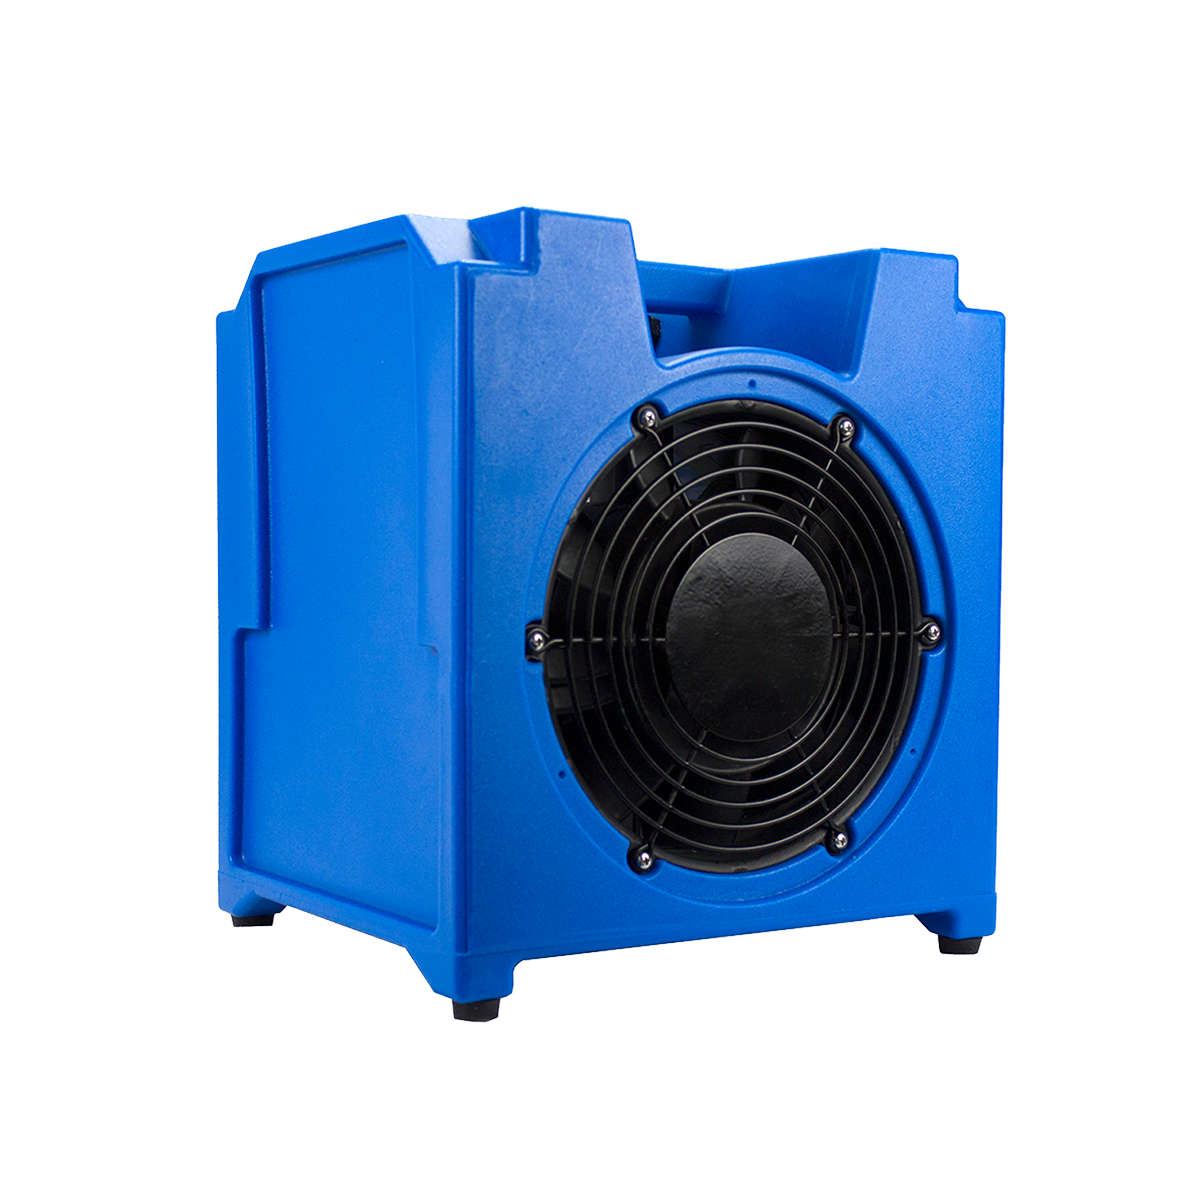 Breeze Block Axial Fan / Air Mover